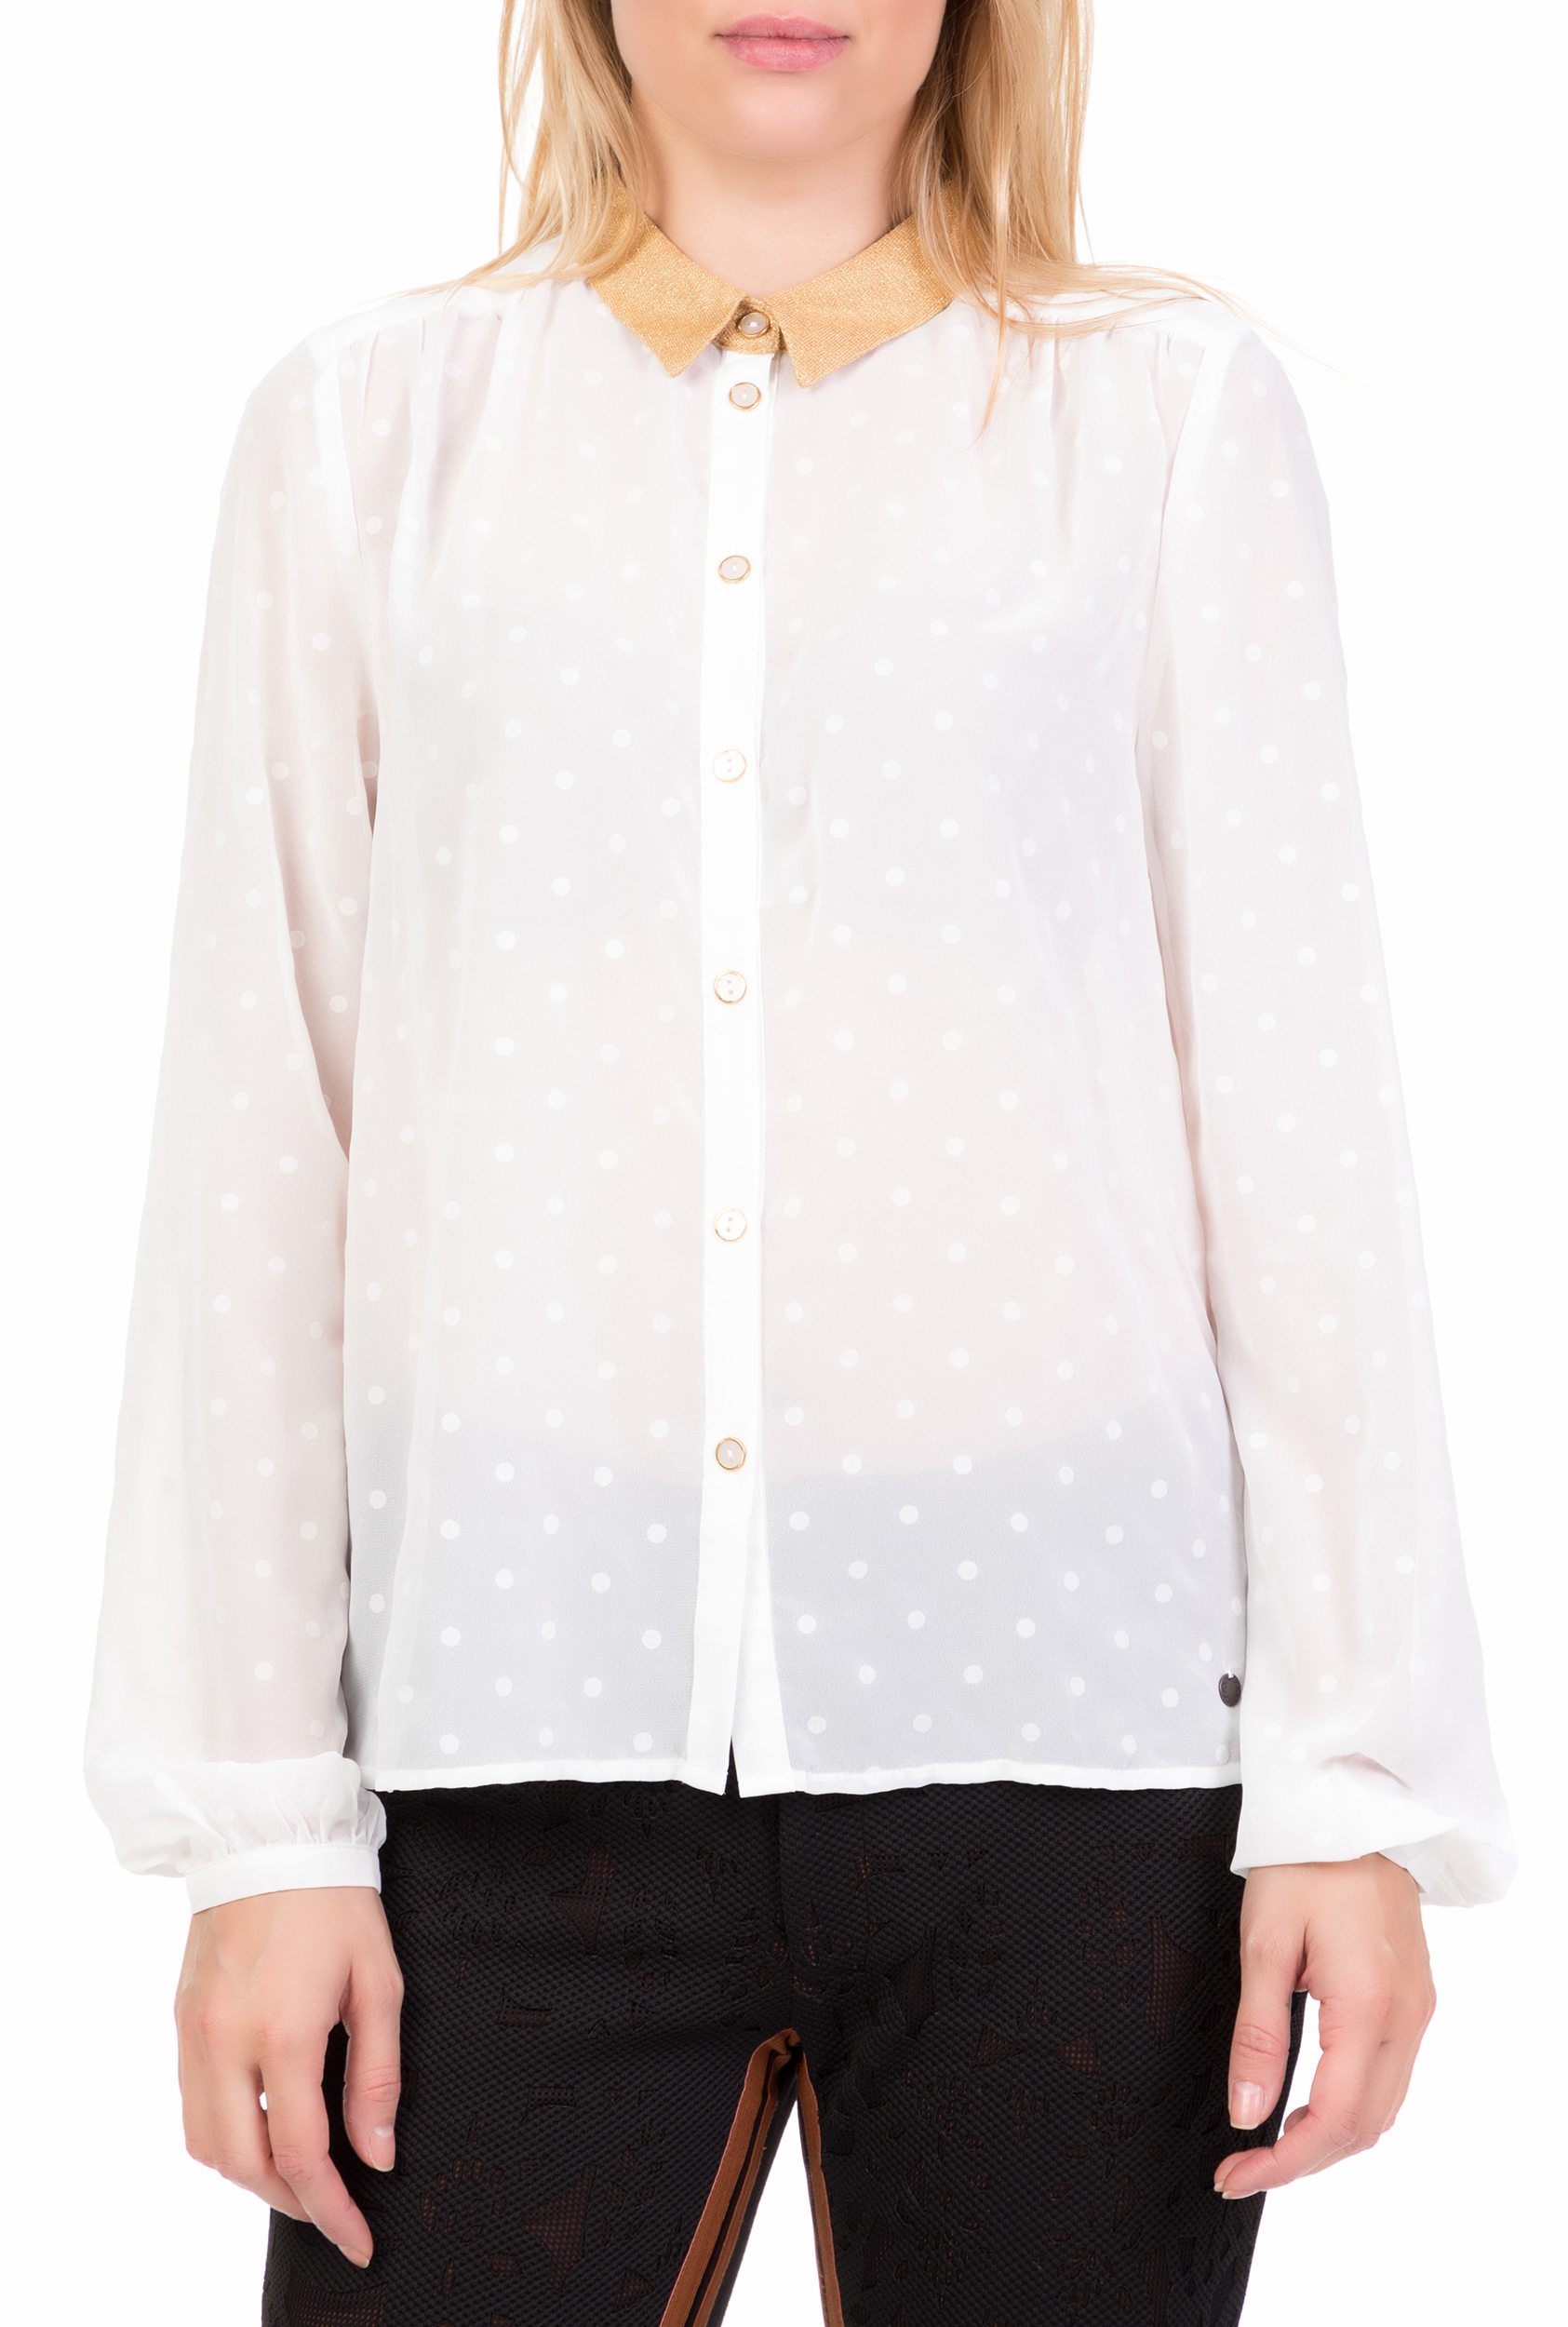 Γυναικεία/Ρούχα/Πουκάμισα/Μακρυμάνικα NUMPH - Γυναικείο μακρυμάνικο πουκάμισο NUMPH λευκό